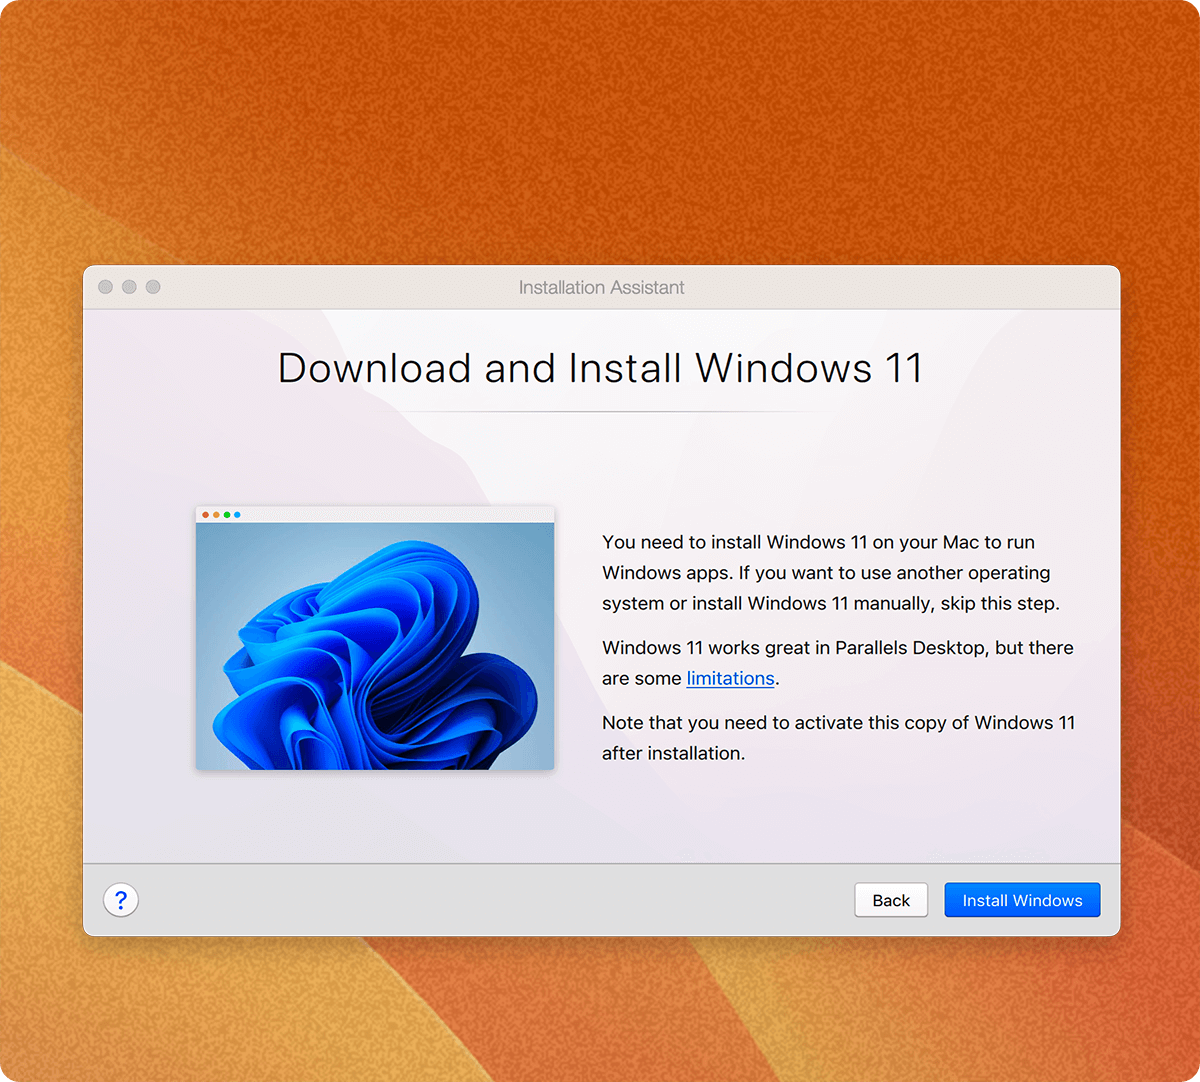 2 クリックで、Windows 11 を Mac にダウンロード、インストール、構成できます